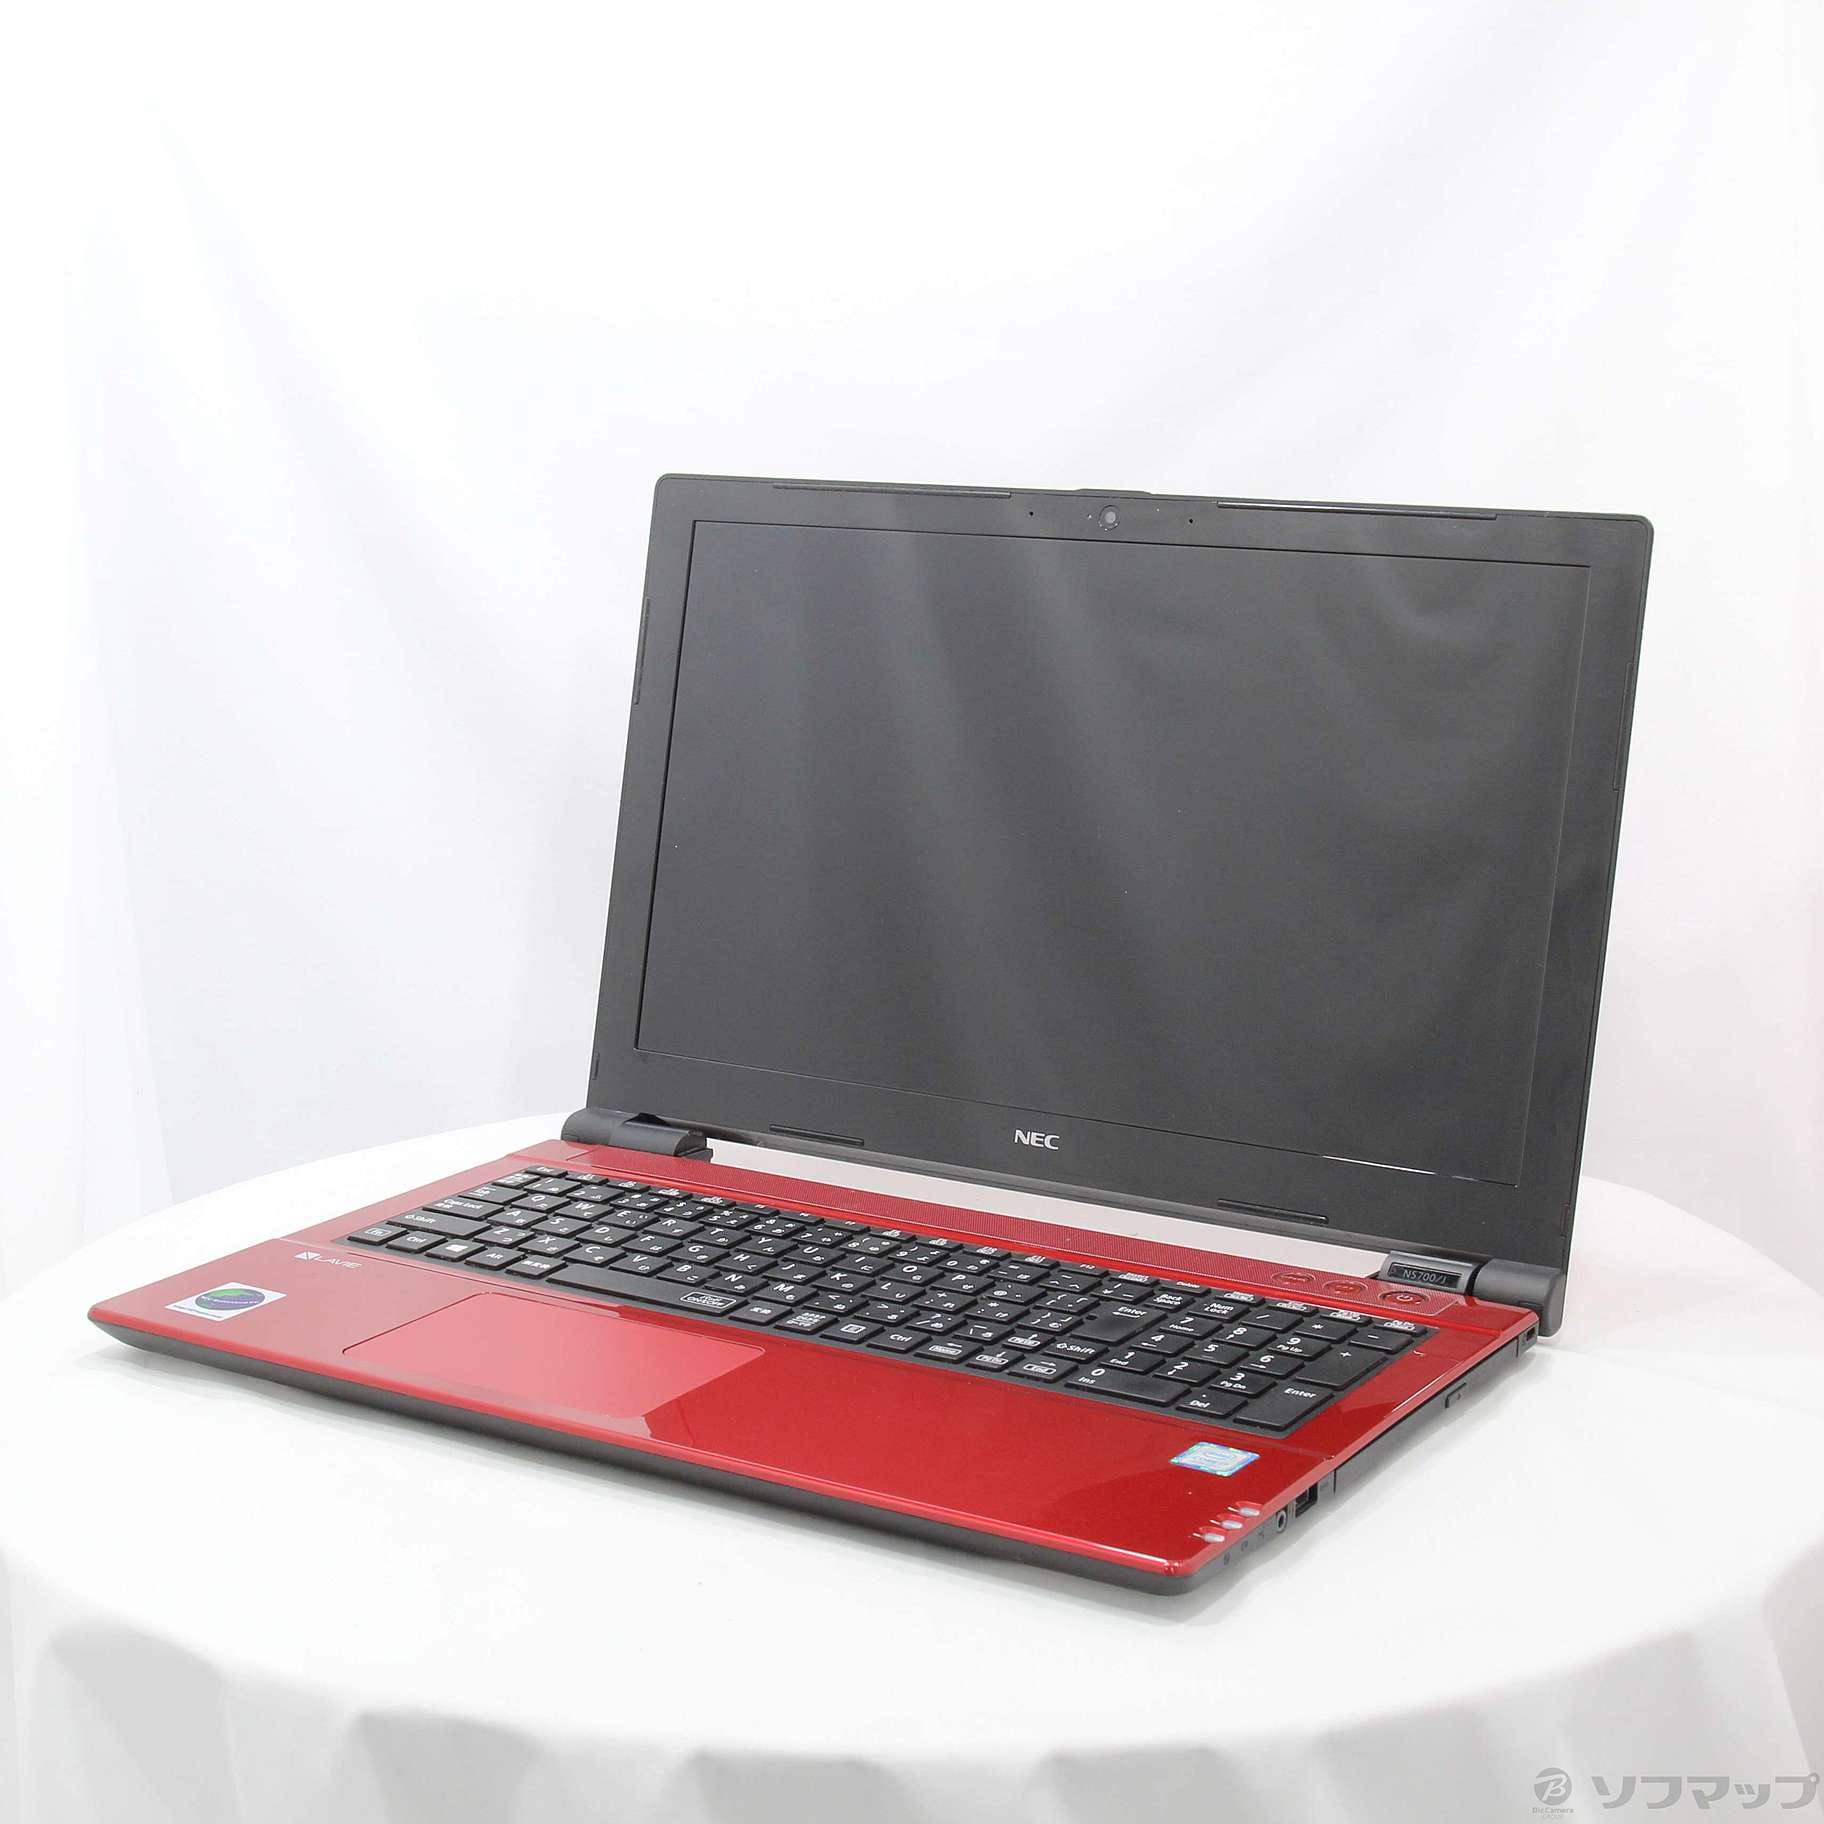 (中古)NEC LAVIE Note Standard PC-NS700JAR-E3 ルミナスレッド (NEC Refreshed PC) (Windows 10) ≪メーカー保証あり≫(377-ud)